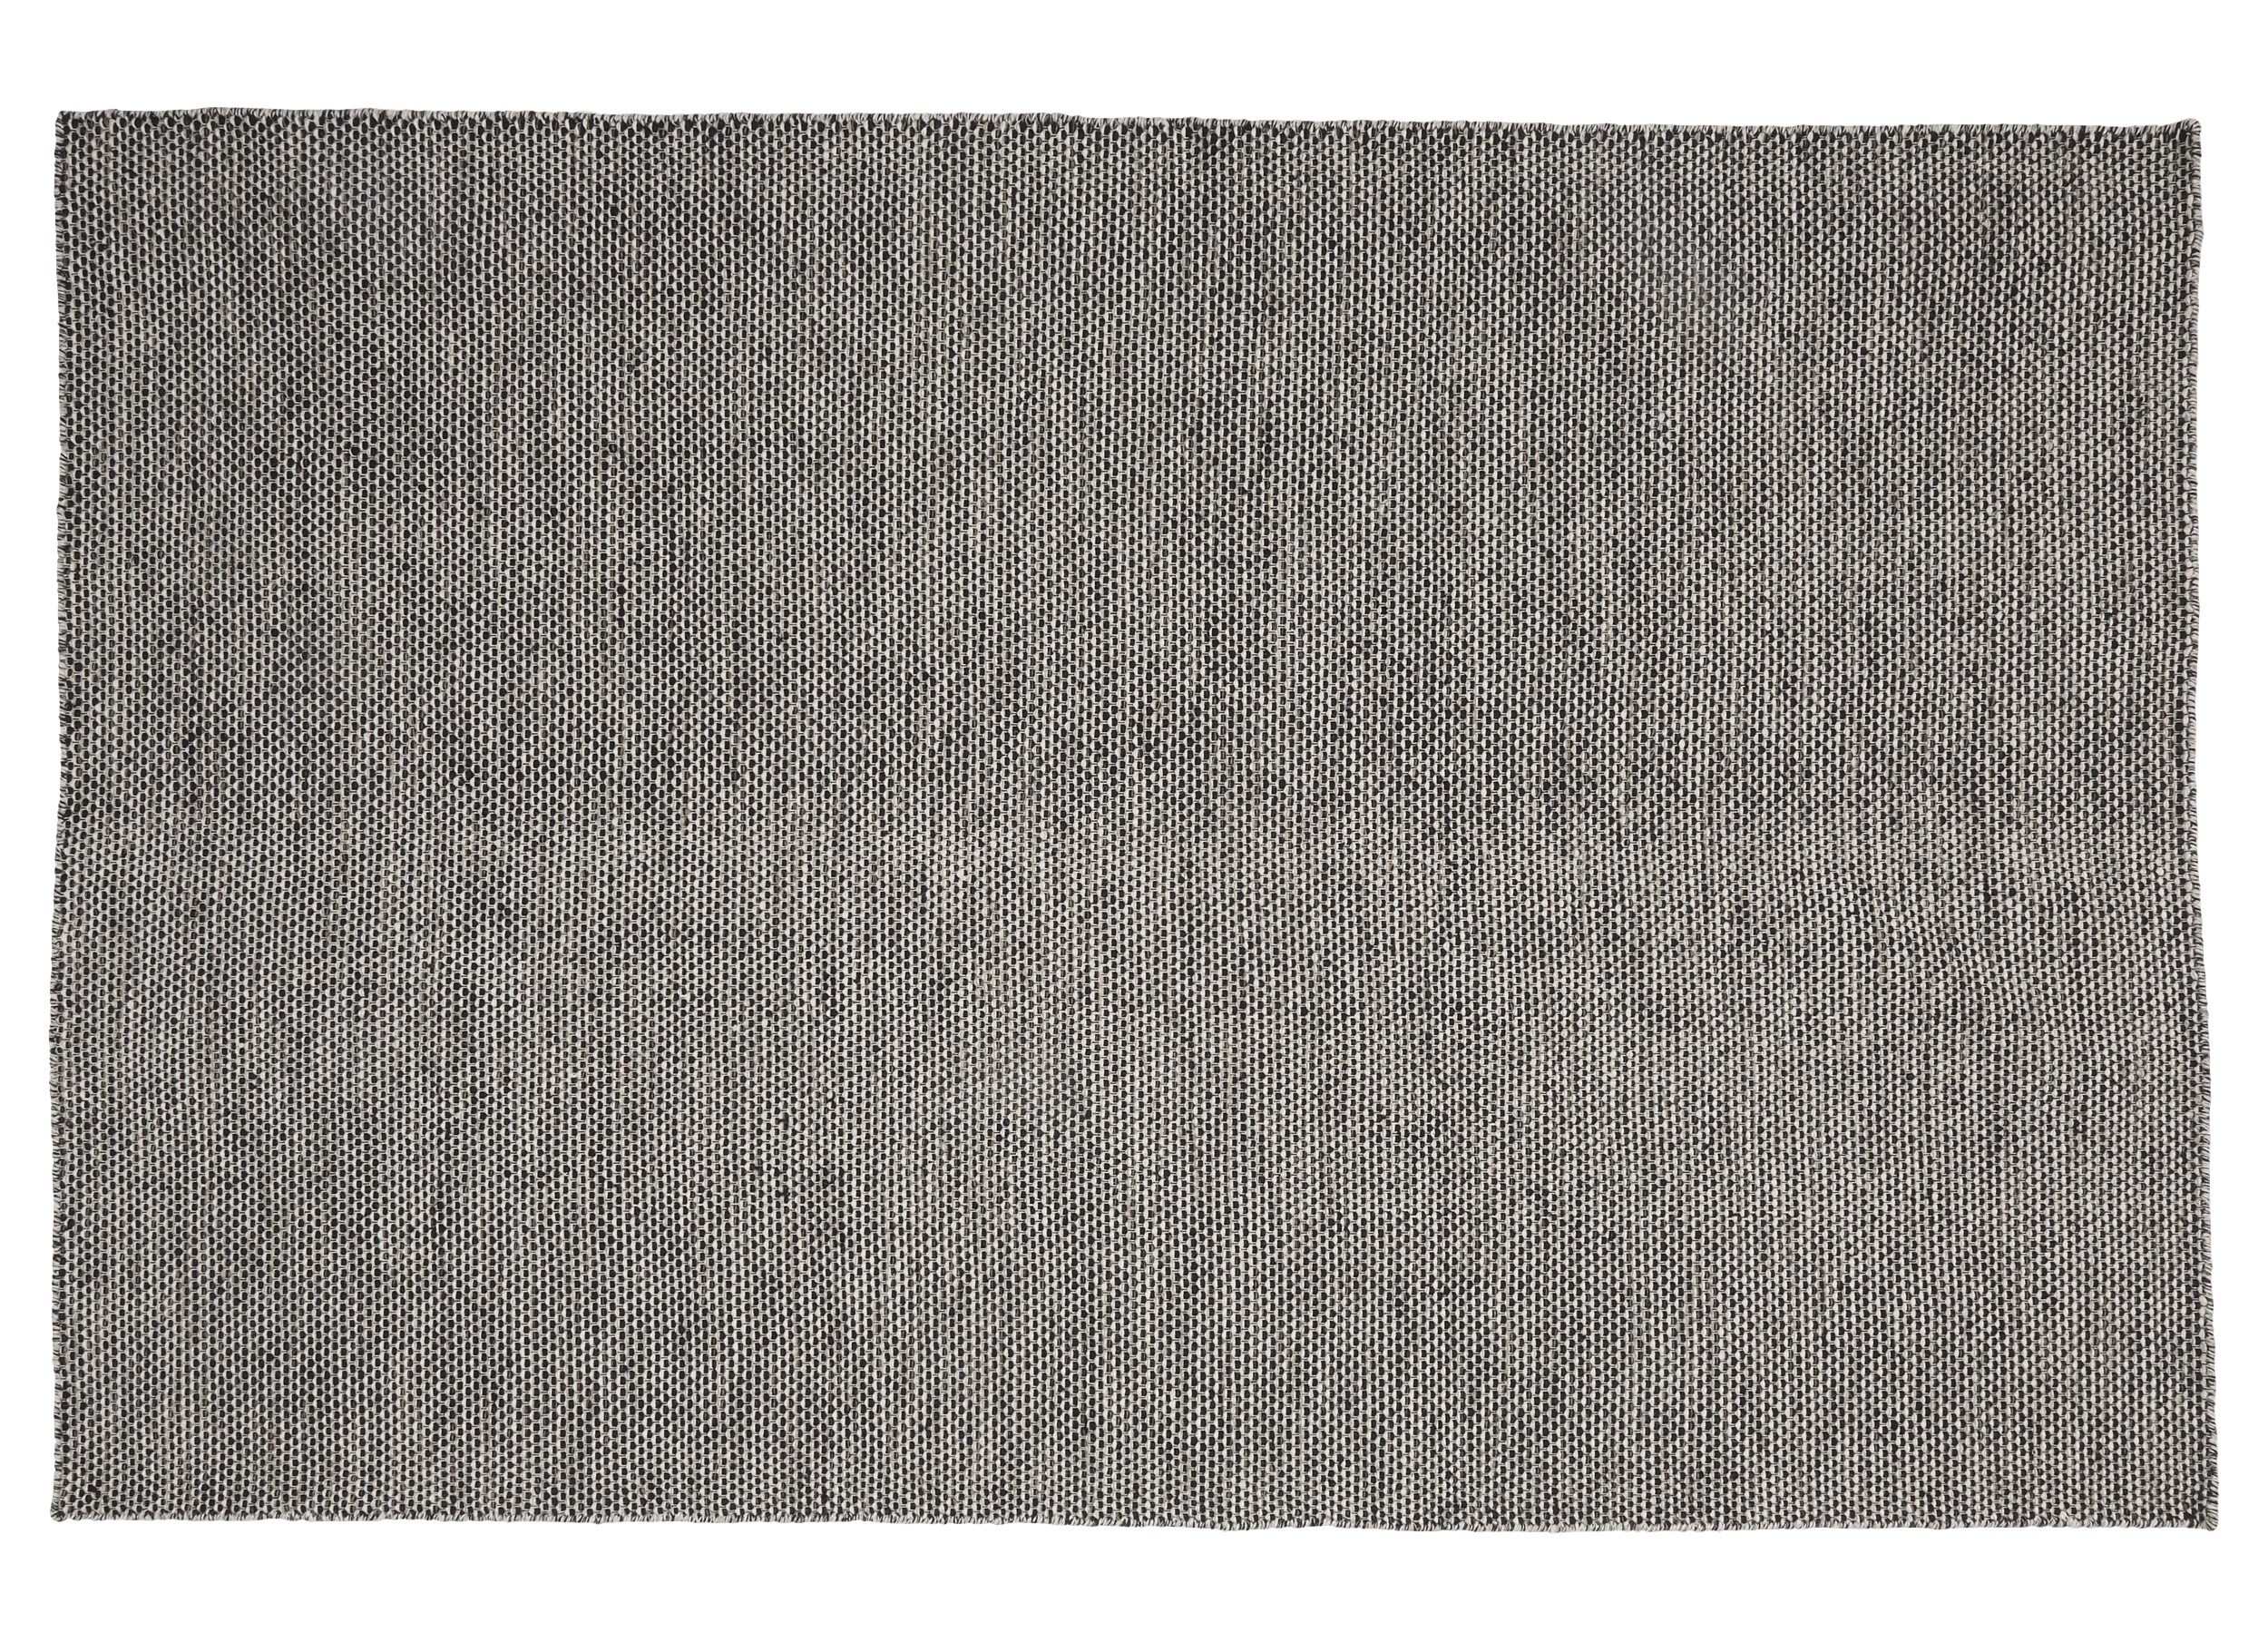 Gabi Kelimmatta 160 x 230 cm - Svart ull och offwhite/ljusgrått mönster